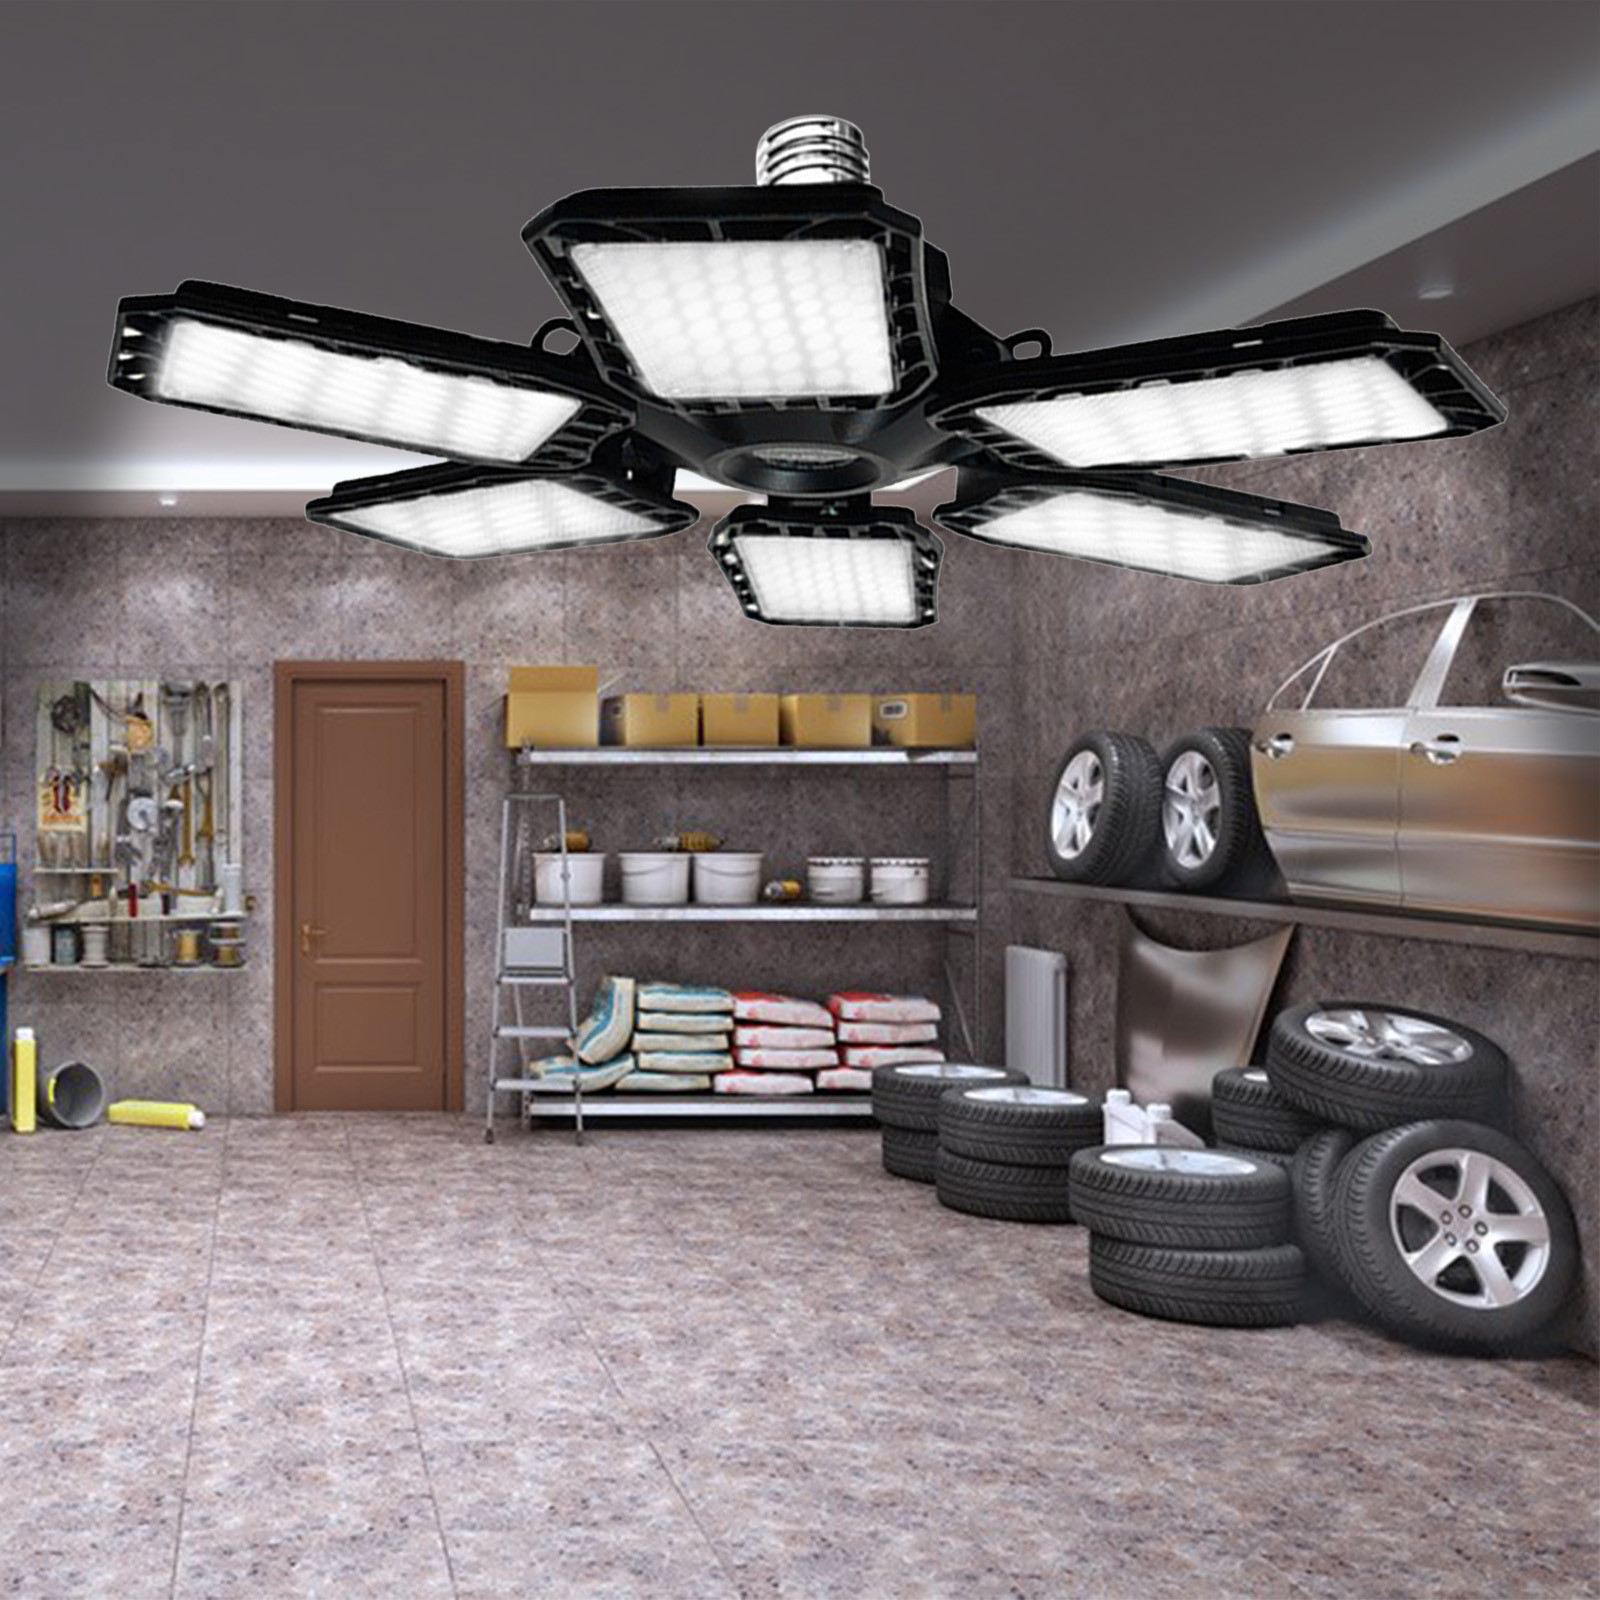 2023 Summer Savings Clearance! WJSXC LED Garage Lights, Deformable LED  Garage Ceiling Lights with Adjustables Panels,LED Shop Lights for Garage  Workshop Basement Support E26/E27 Screw Socket C